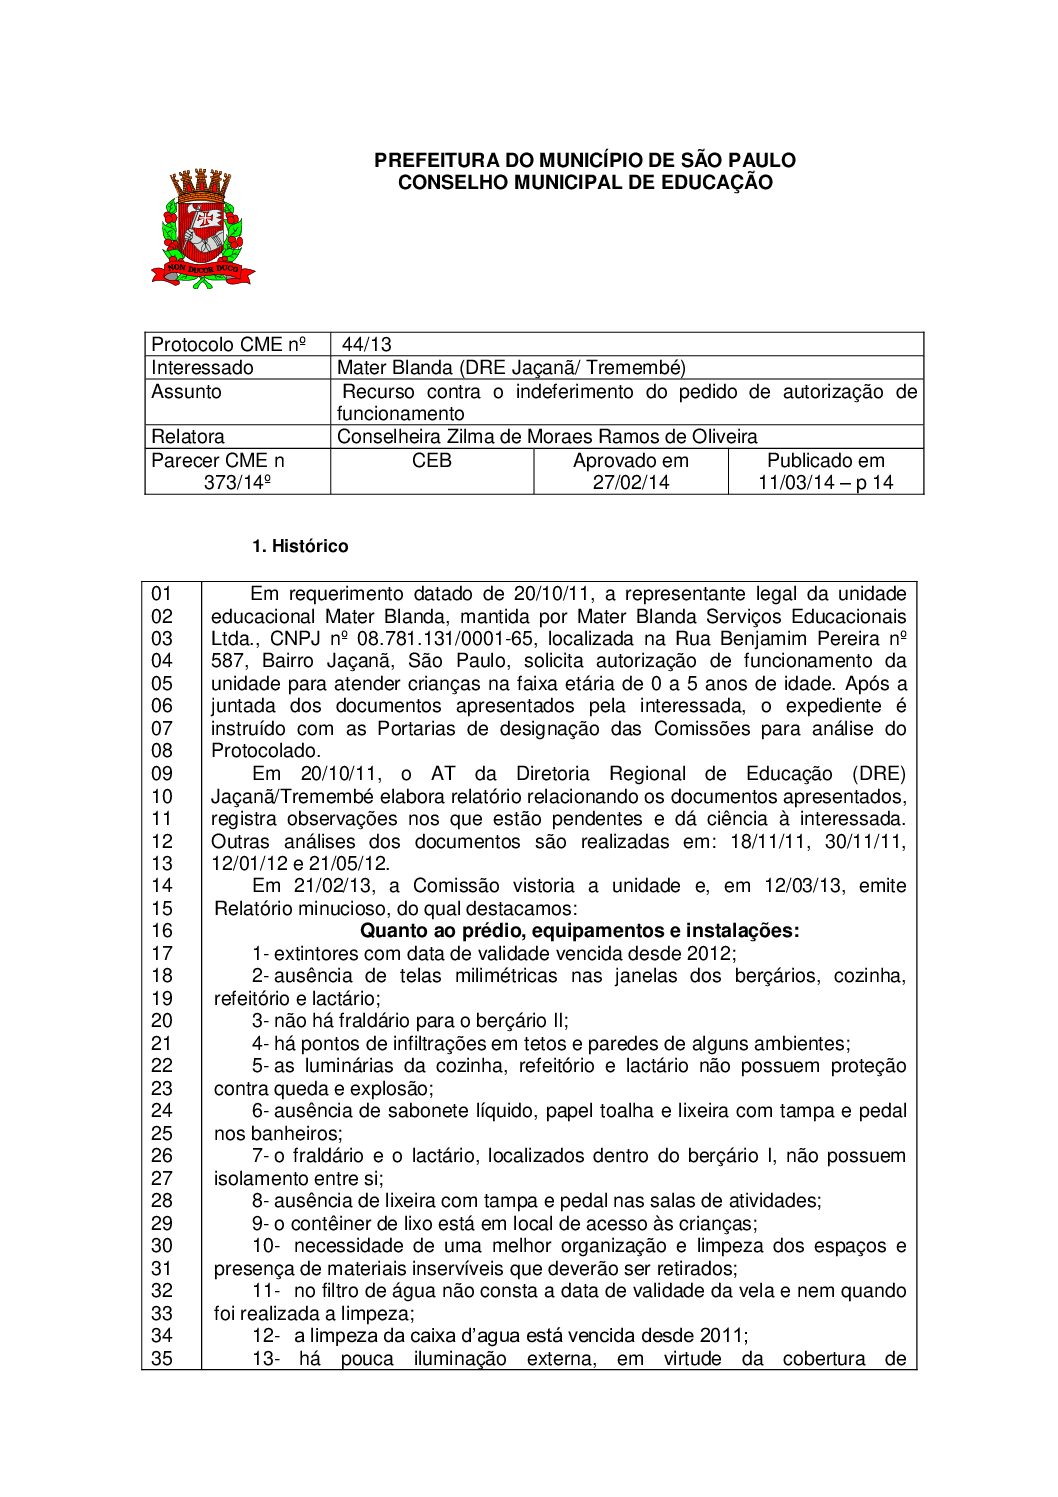 Parecer CME nº 373/2014 - Mater Blanda (DRE Jaçanã/ Tremembé) - Recurso contra o indeferimento do pedido de autorização de funcionamento 